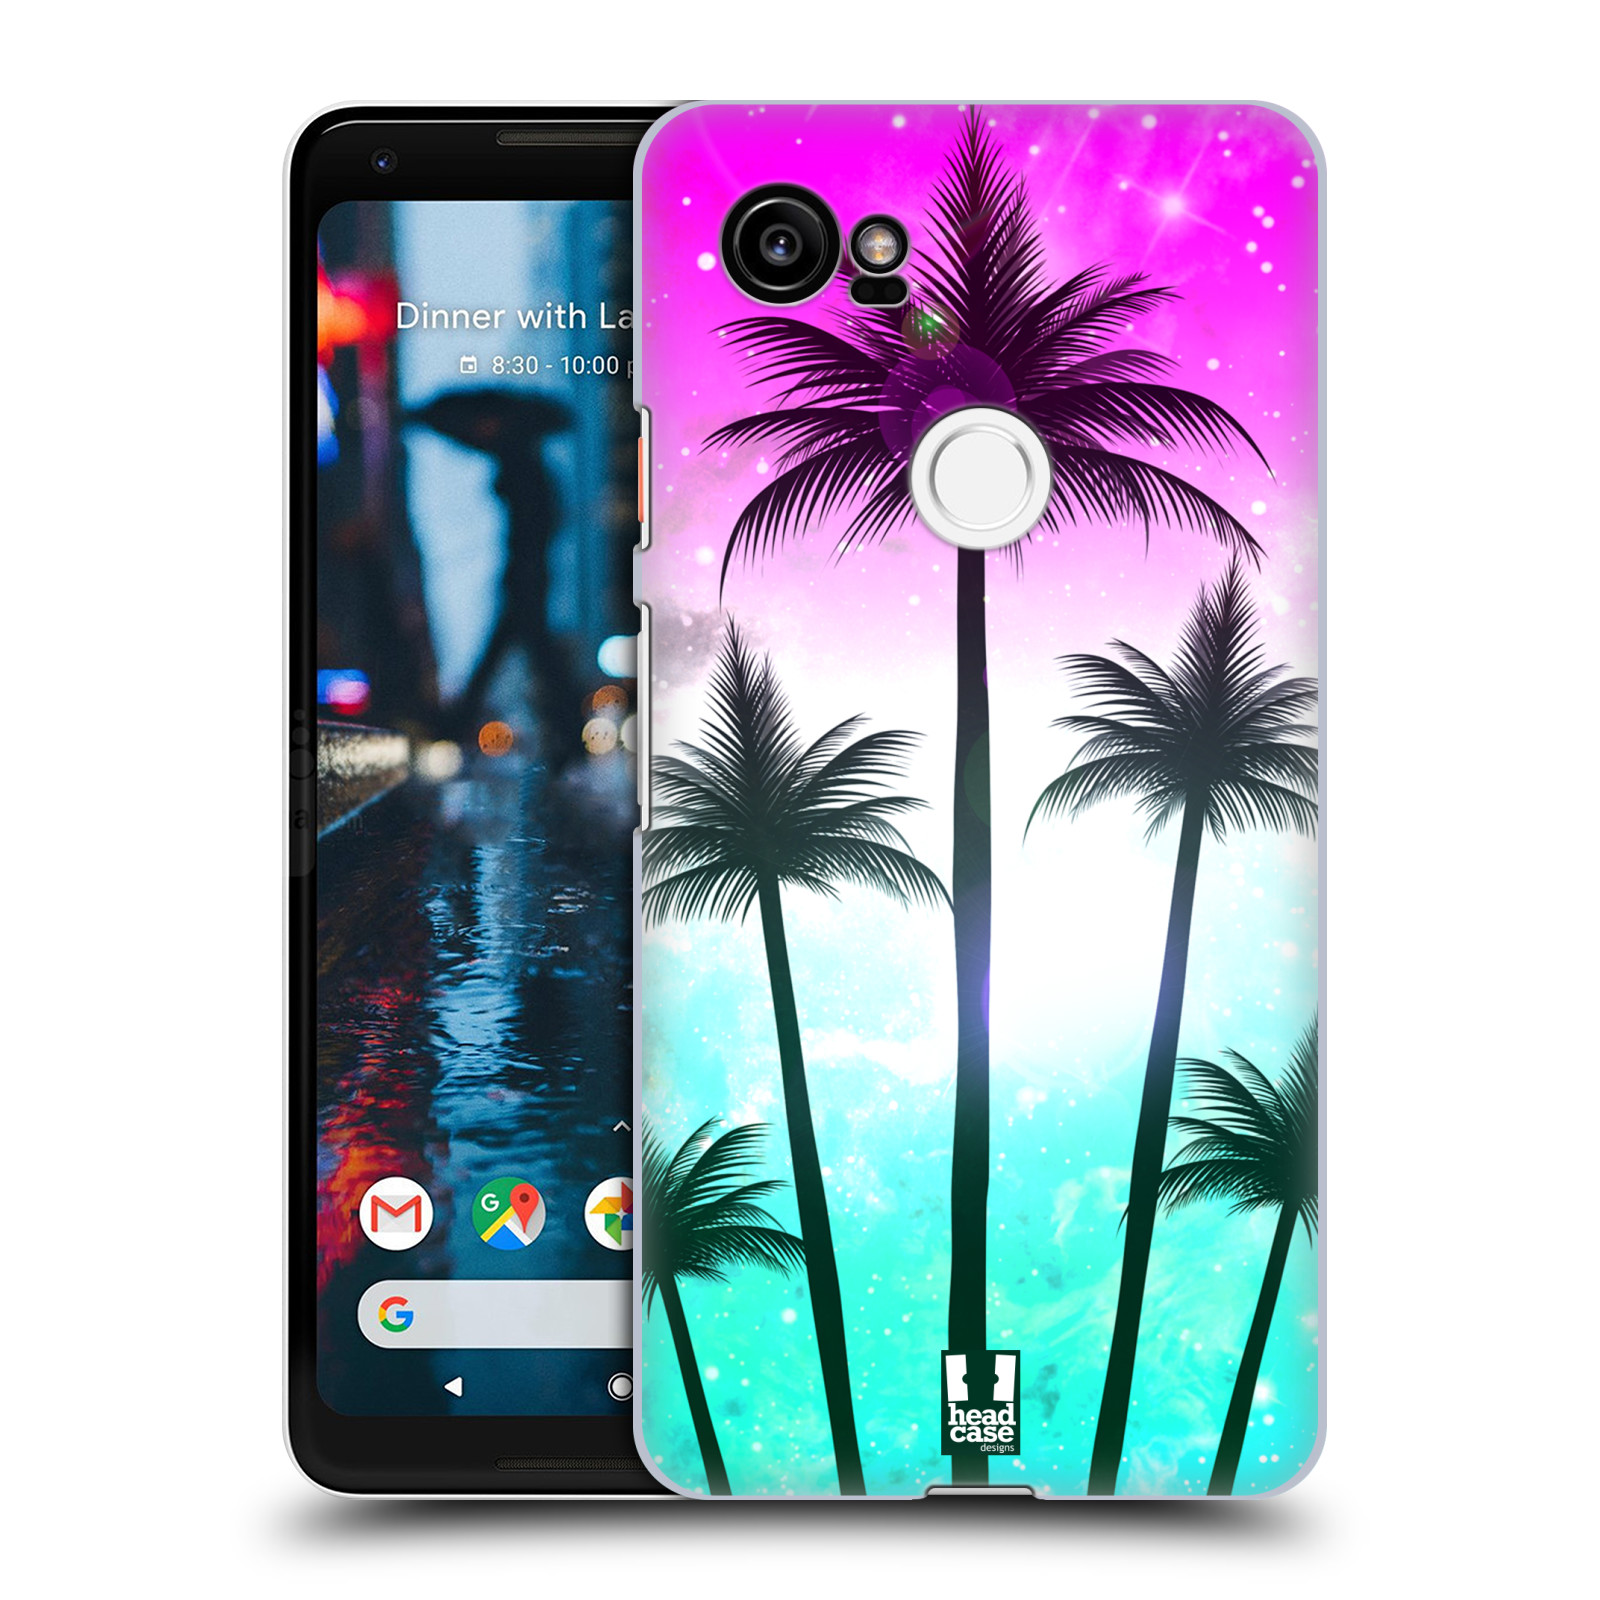 HEAD CASE plastový obal na mobil Google Pixel 2 XL vzor Kreslený motiv silueta moře a palmy RŮŽOVÁ A TYRKYS